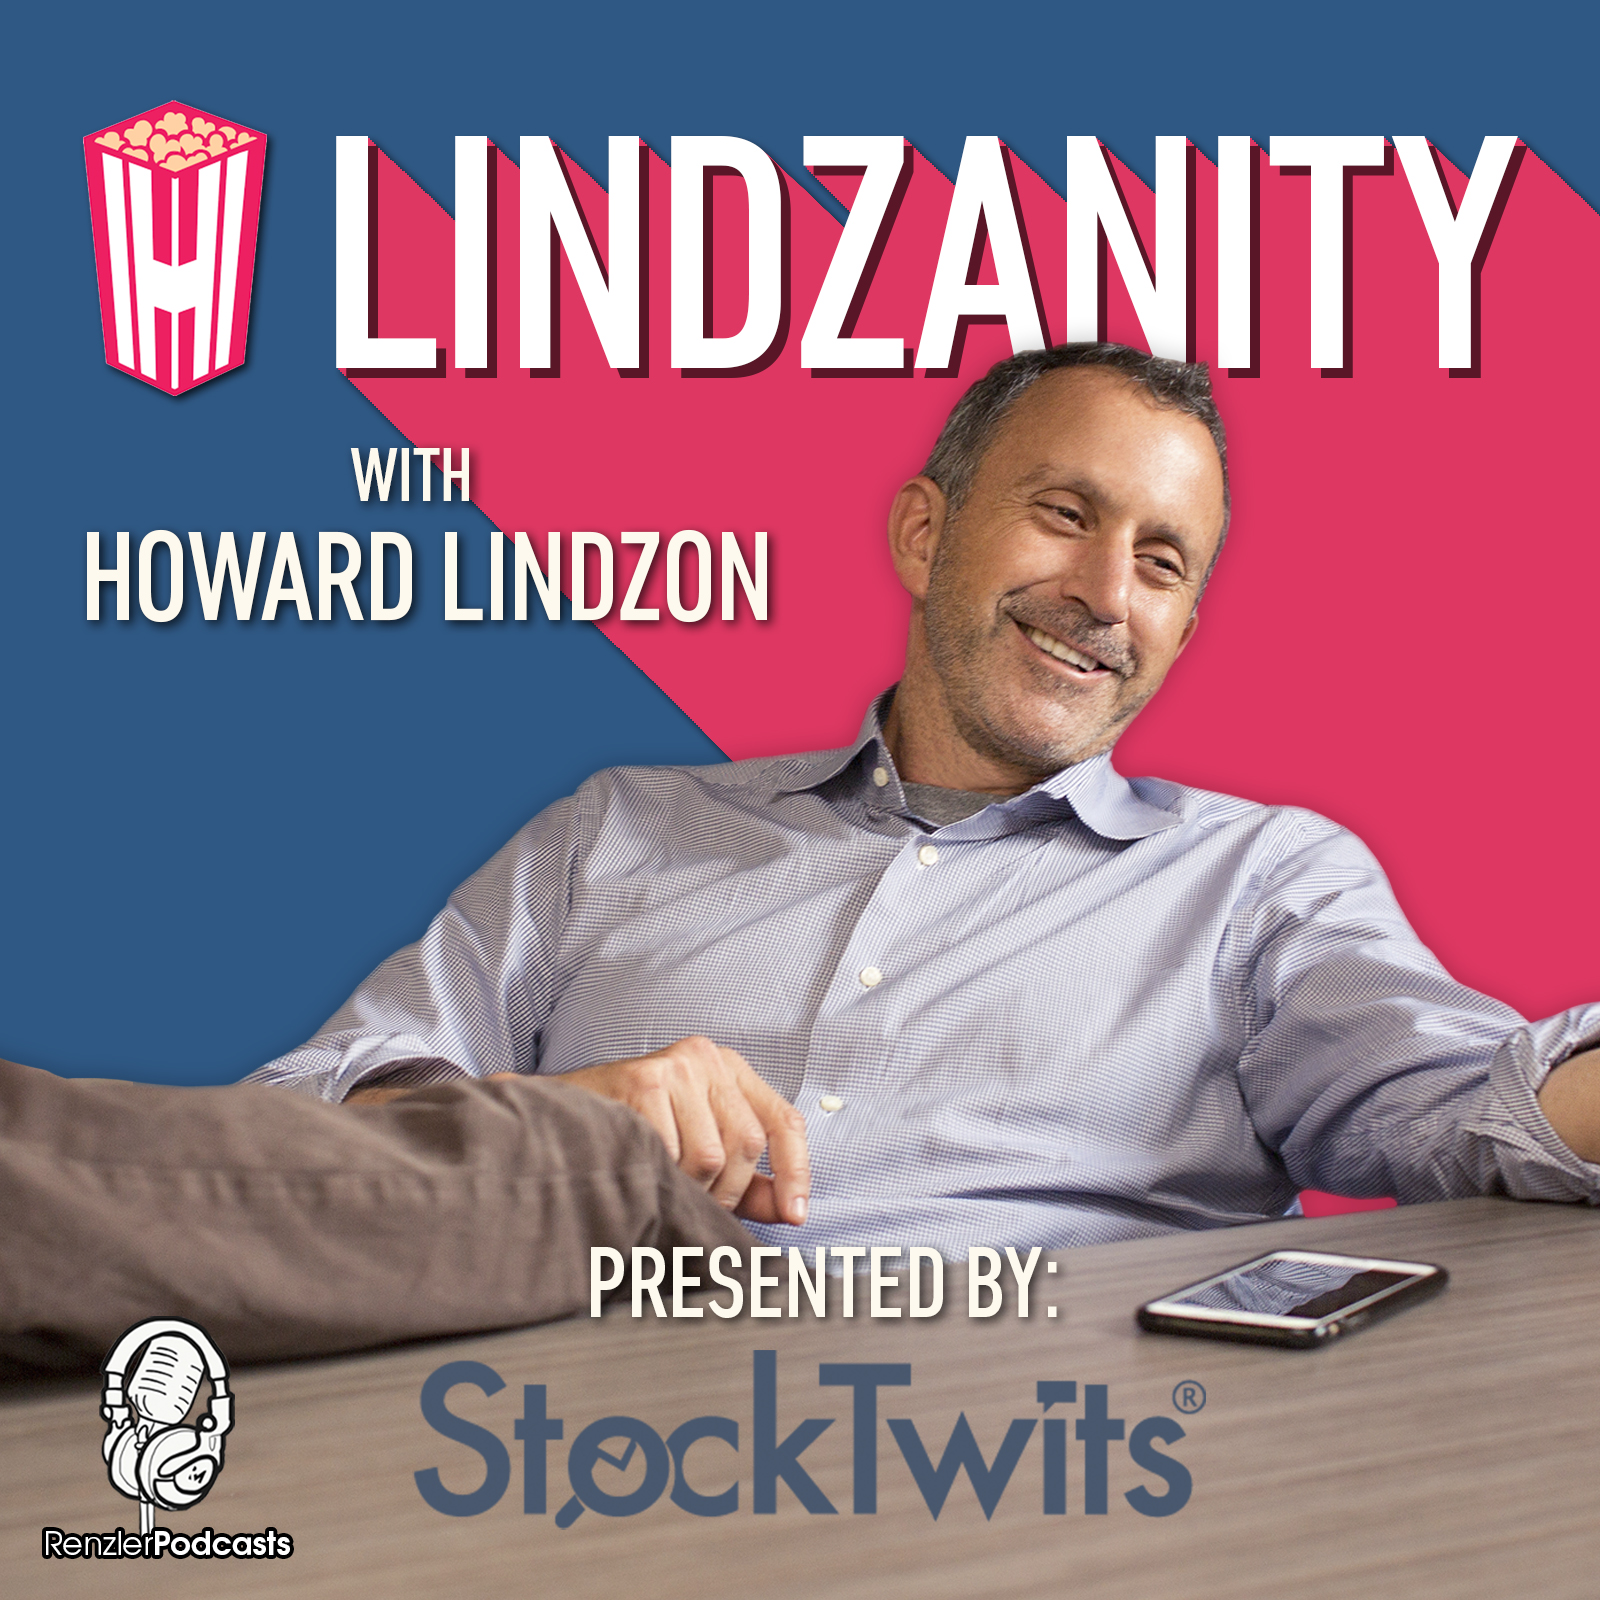 Lindzanity with Howard Lindzon